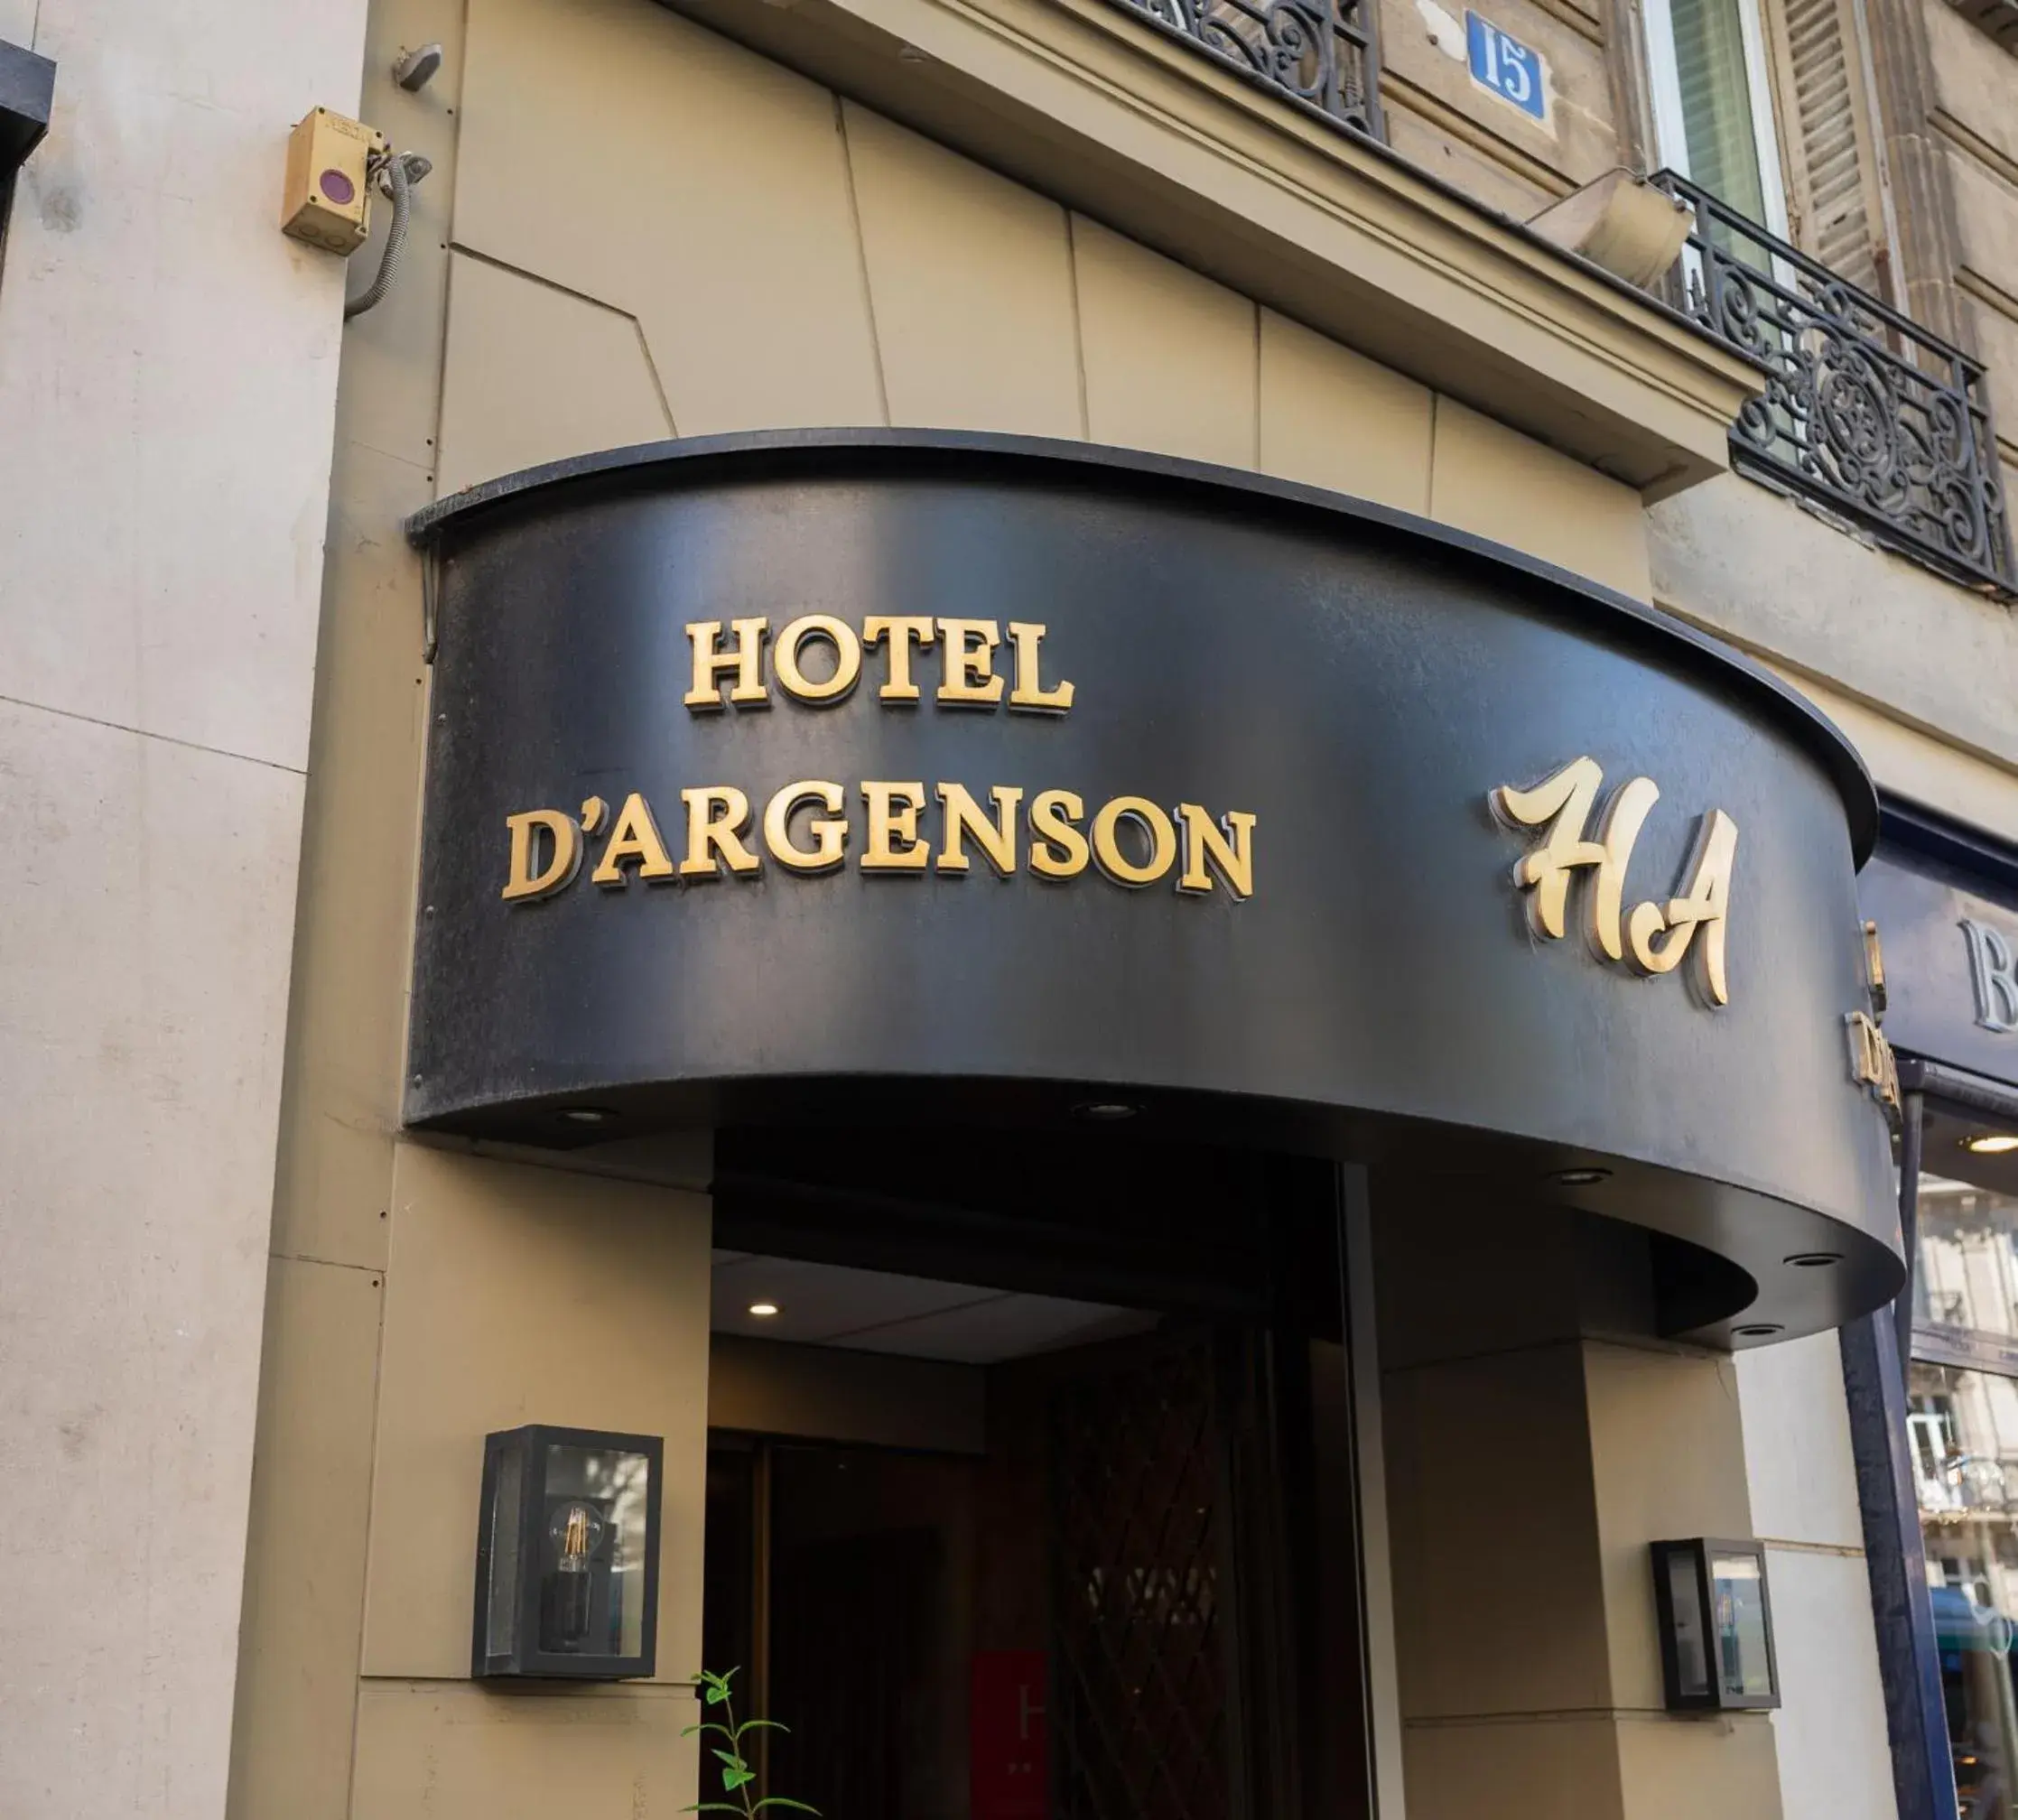 Facade/entrance in Hotel D'argenson